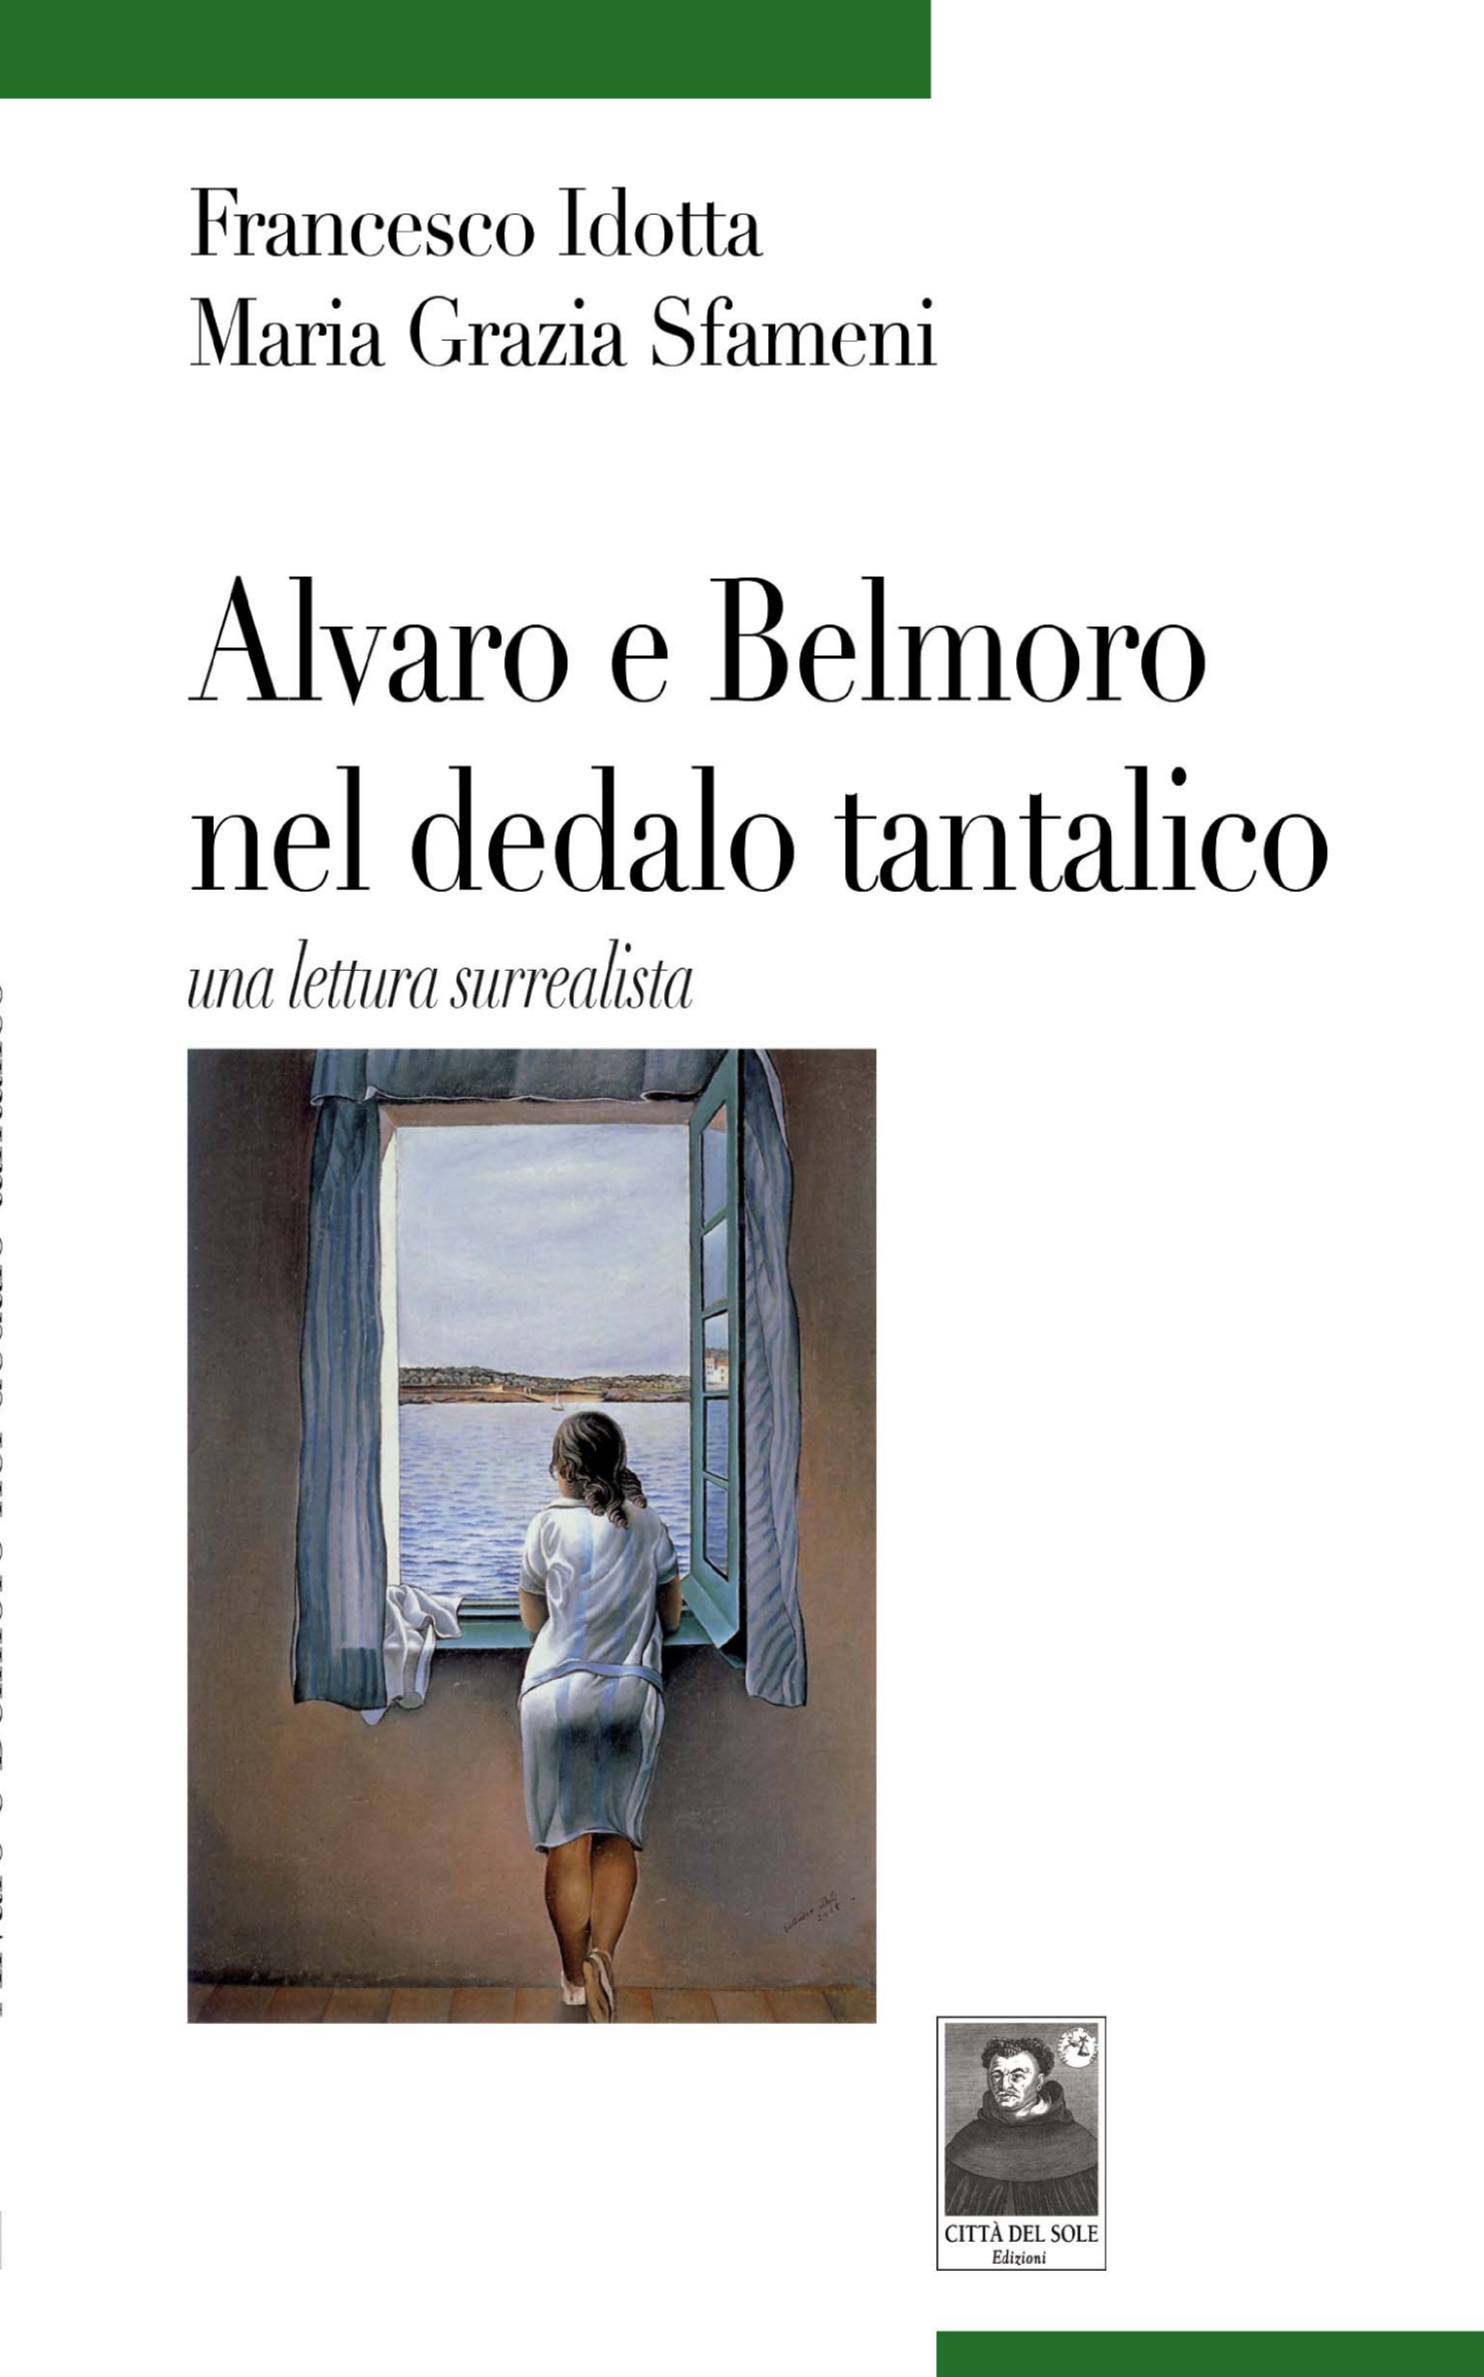 Alvaro e Belmoro nel dedalo tantalico. Una lettura surrealista.